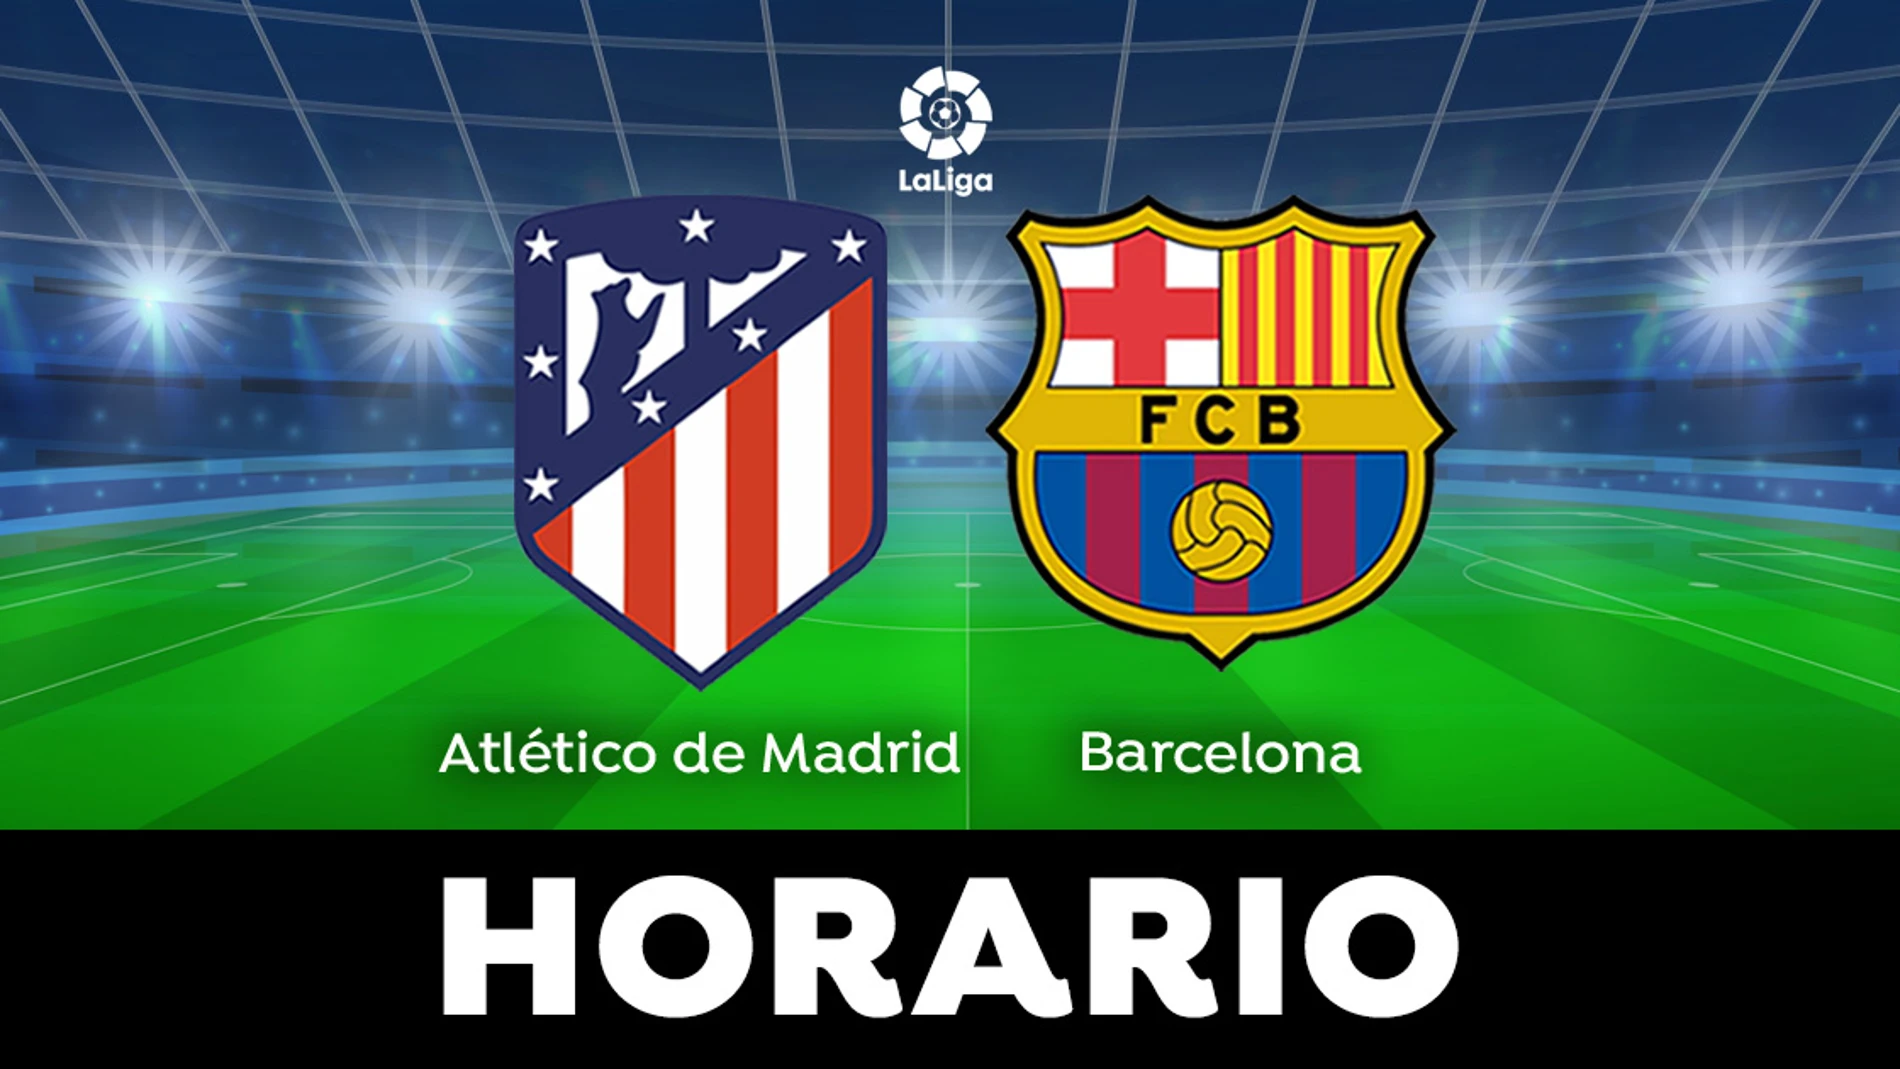 Atlético de Madrid - Barcelona: Horario y ver el de LaLiga directo